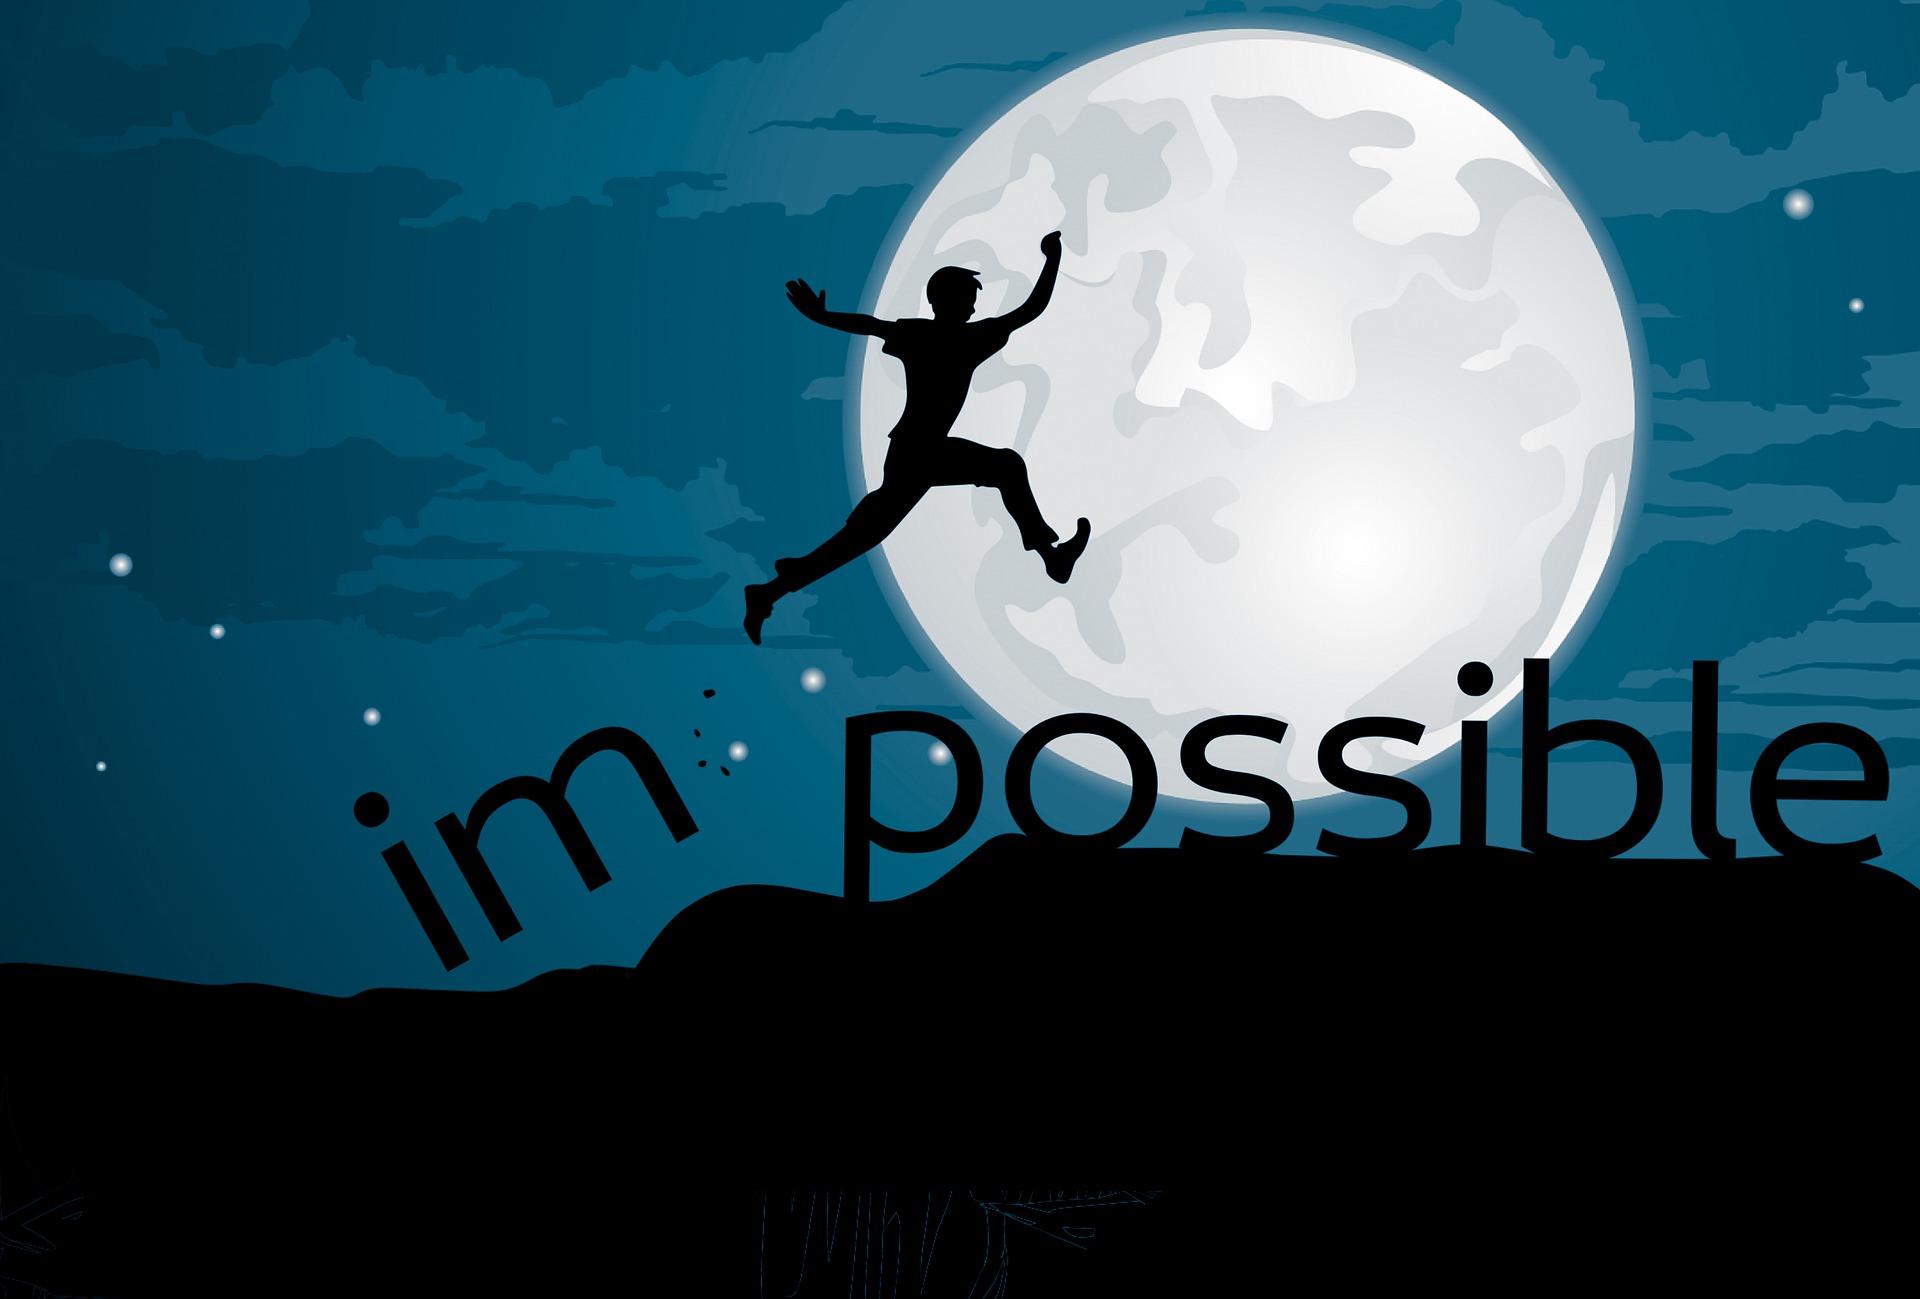 Illustration einer Person die freudig in die Luft springt und dabei das Wort "impossible" zerst?rt, sodass nur "possible" zurckbleibt